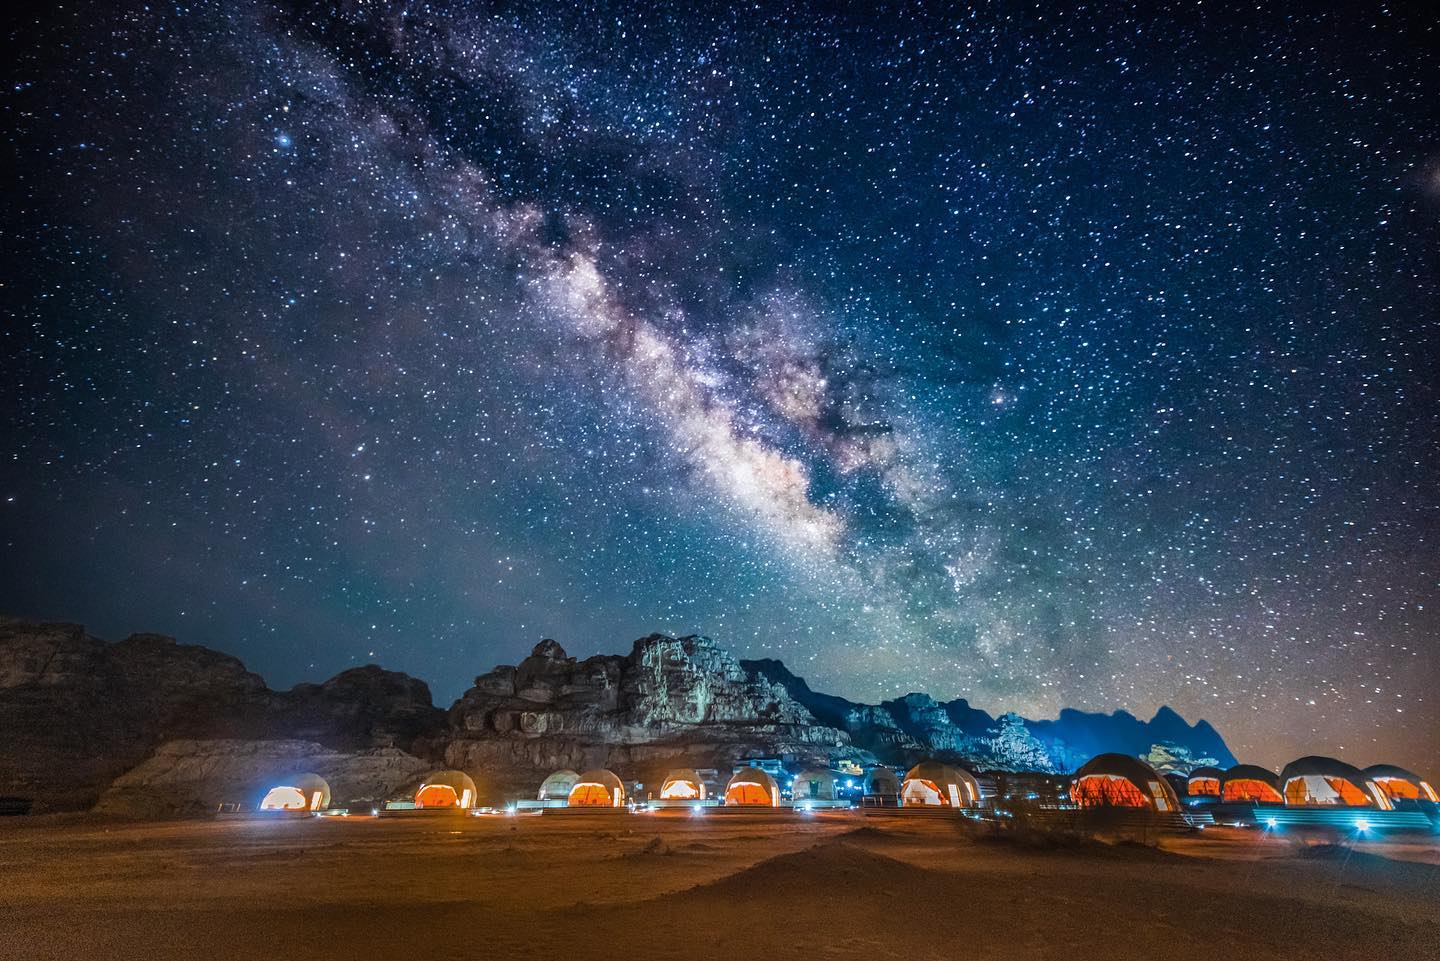 Stargazing experience in Wadi Rum